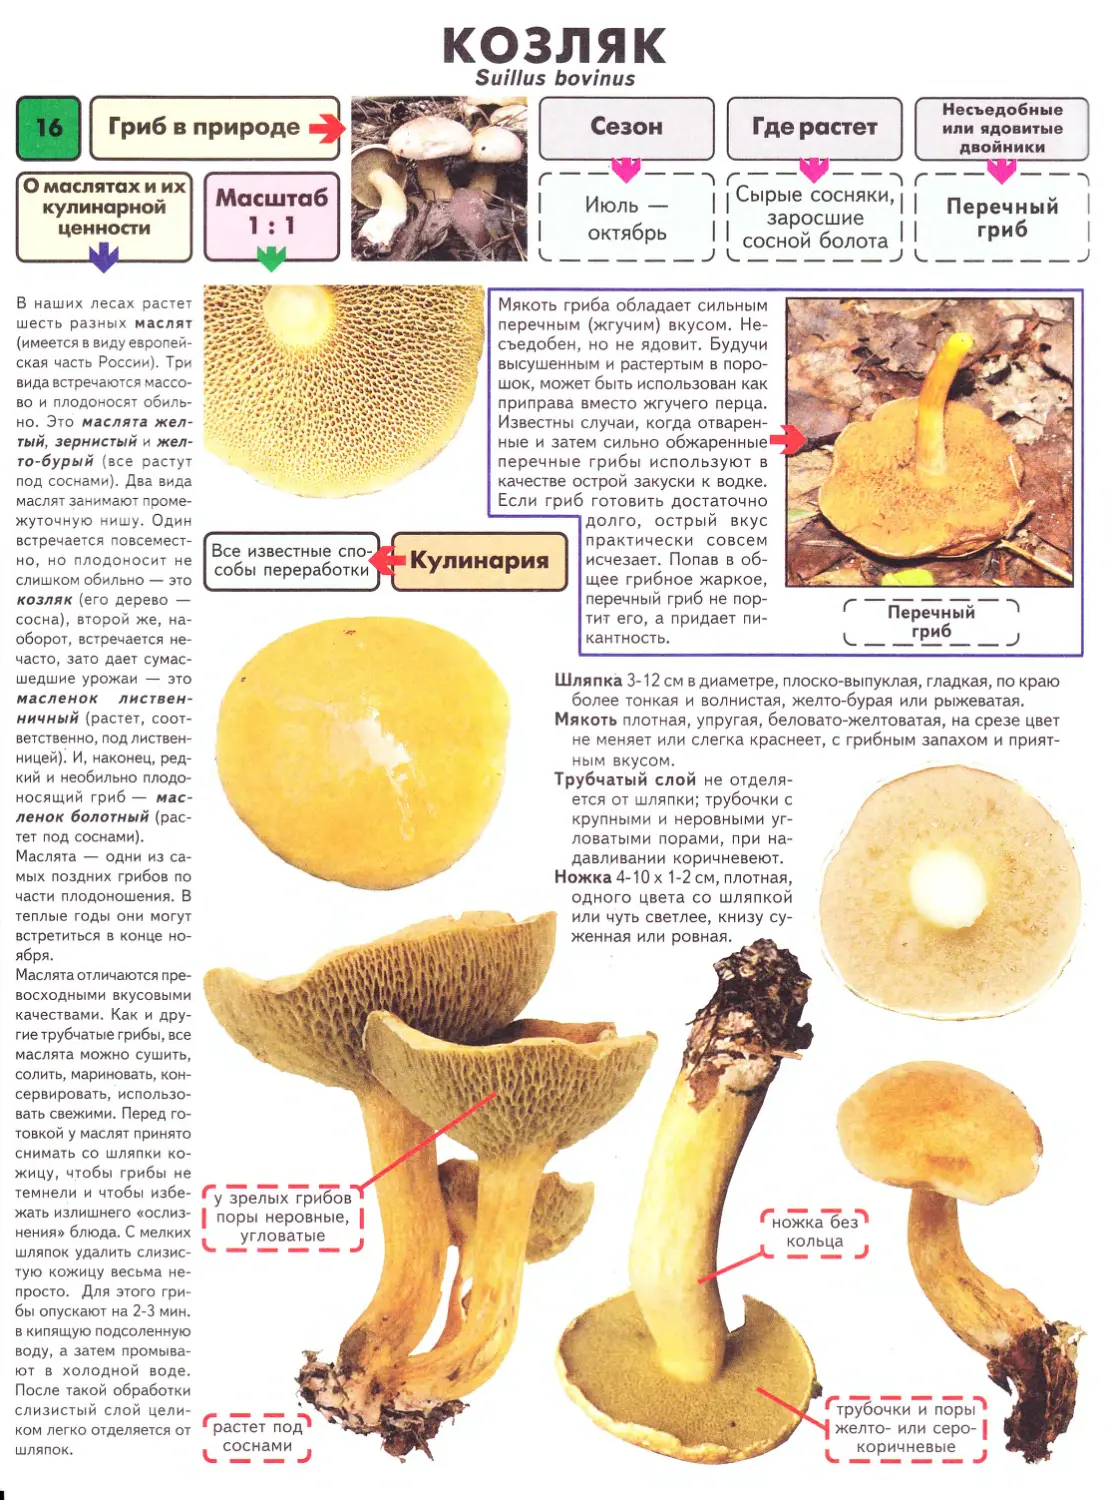 масленок гриб фото ложный